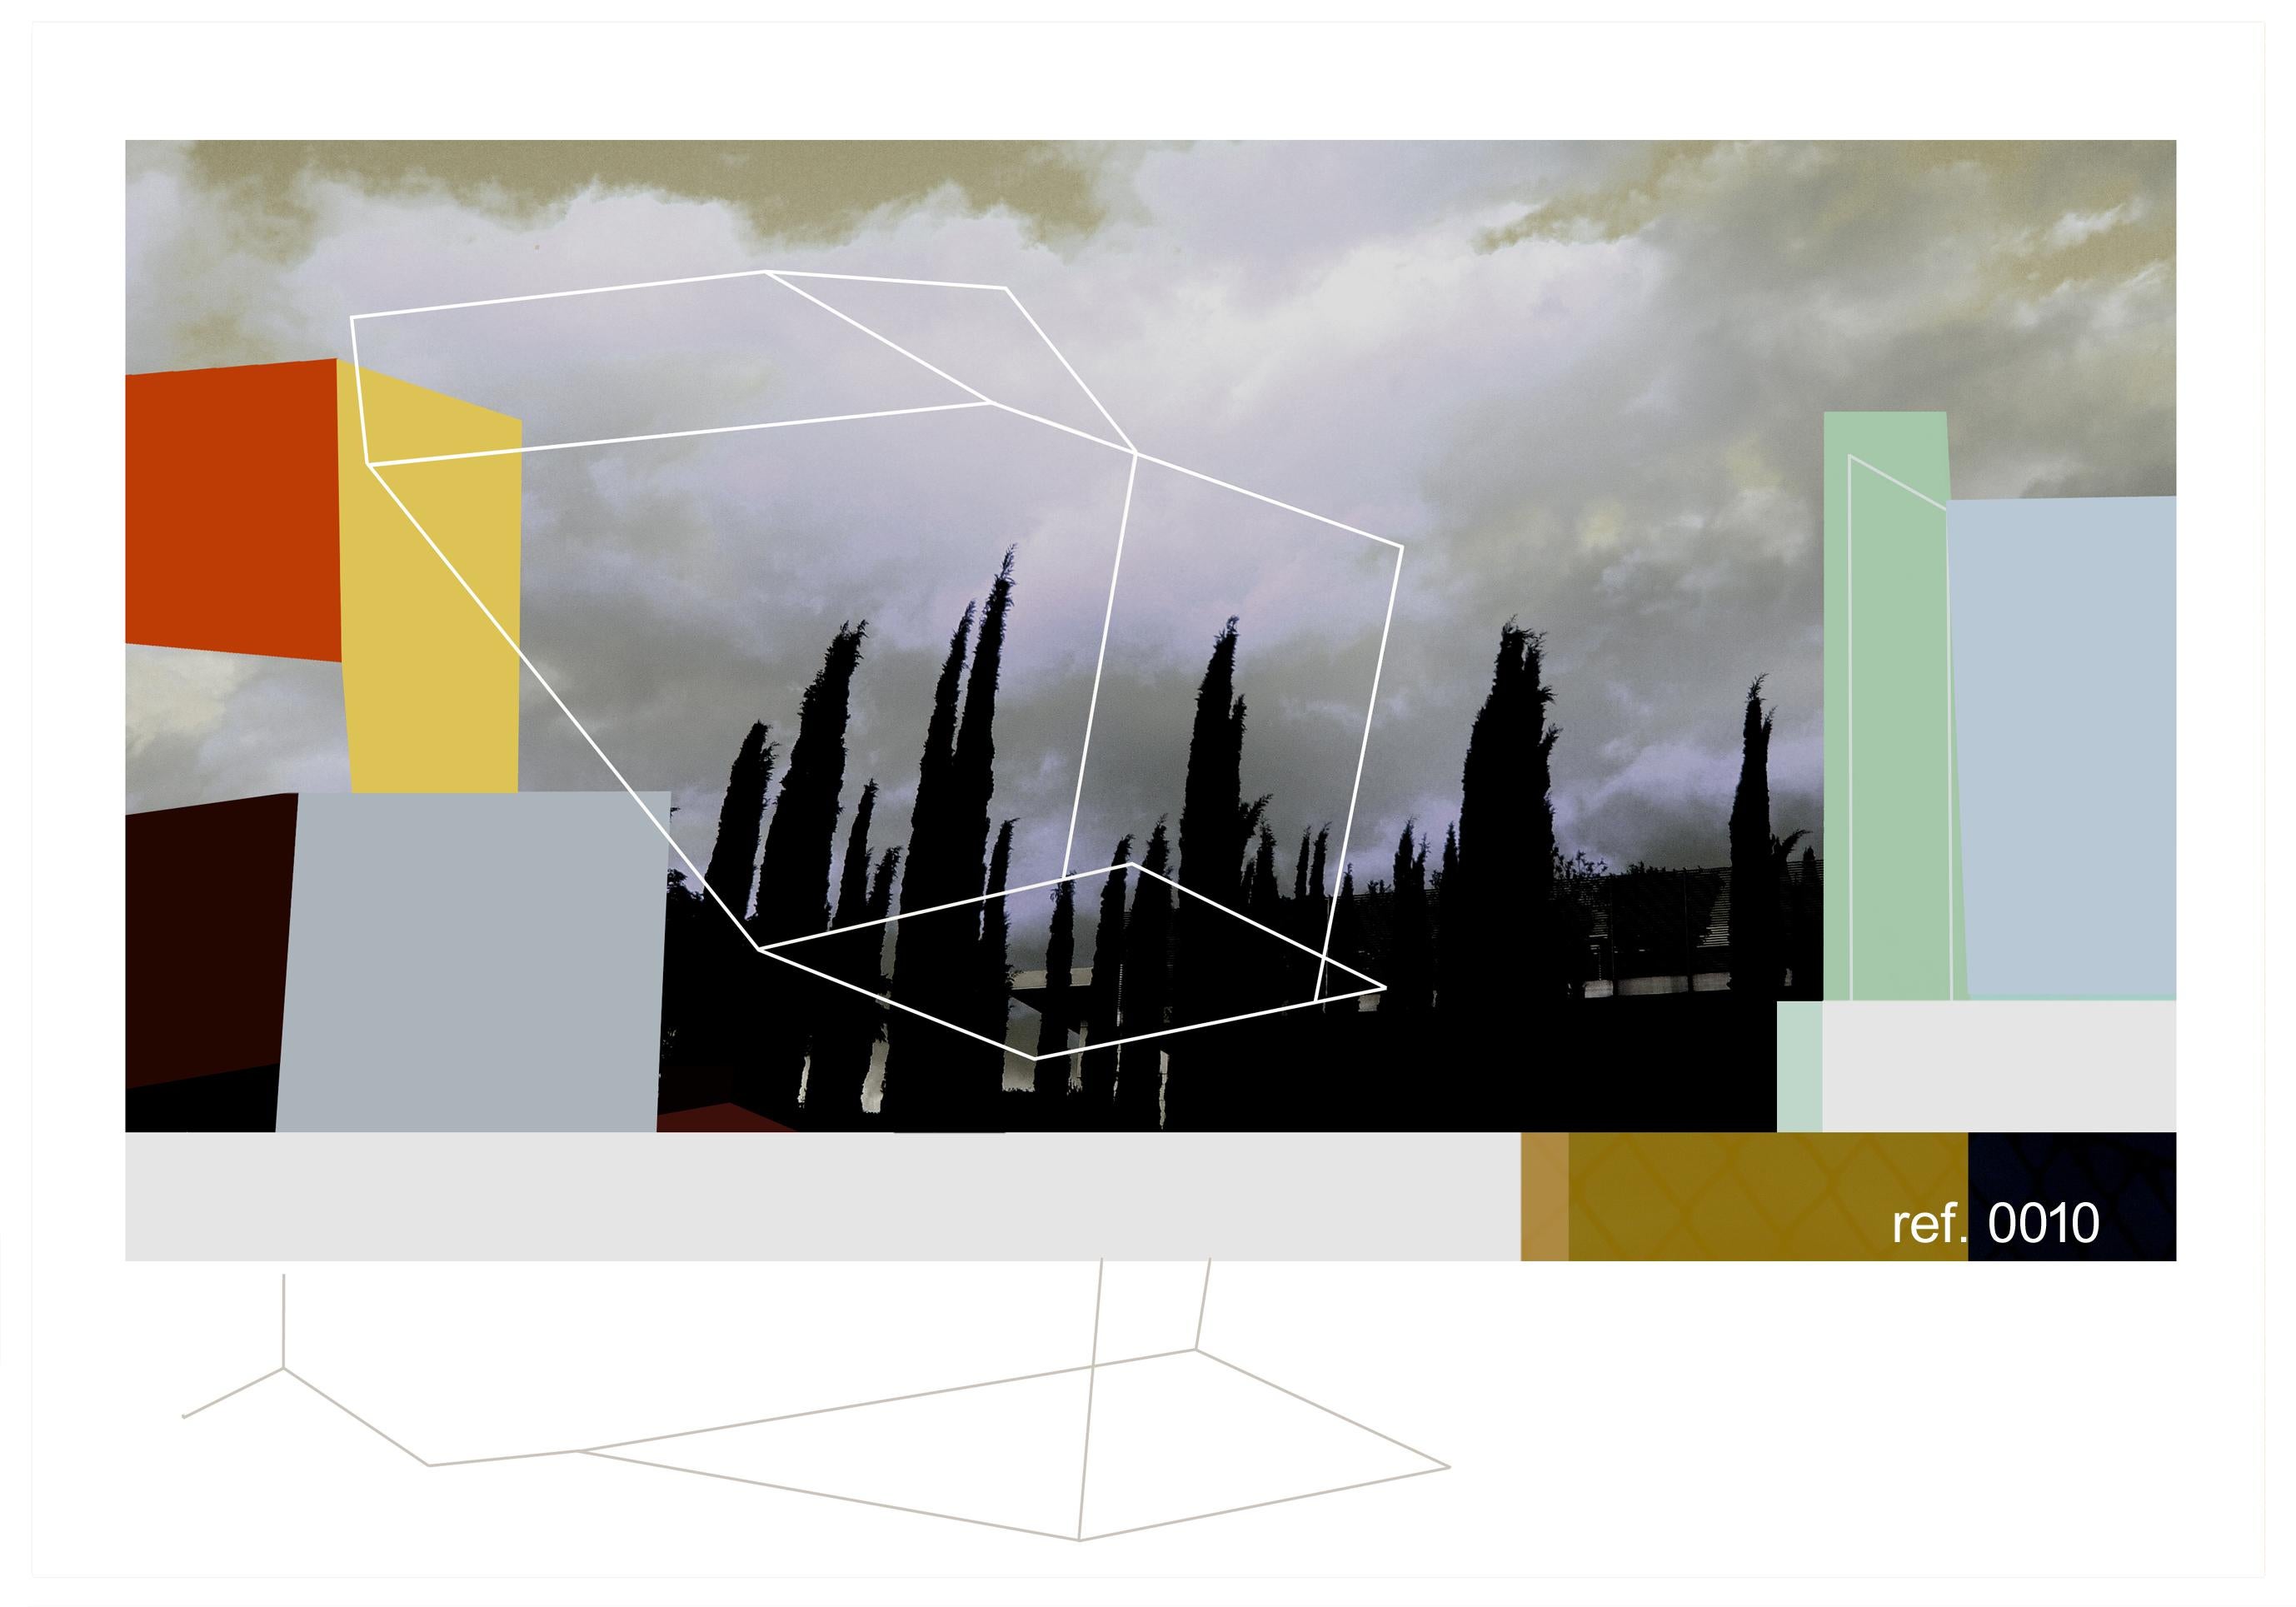 Chez Masaccio - Contemporary, Abstract, Pop art, geometric, landscape 